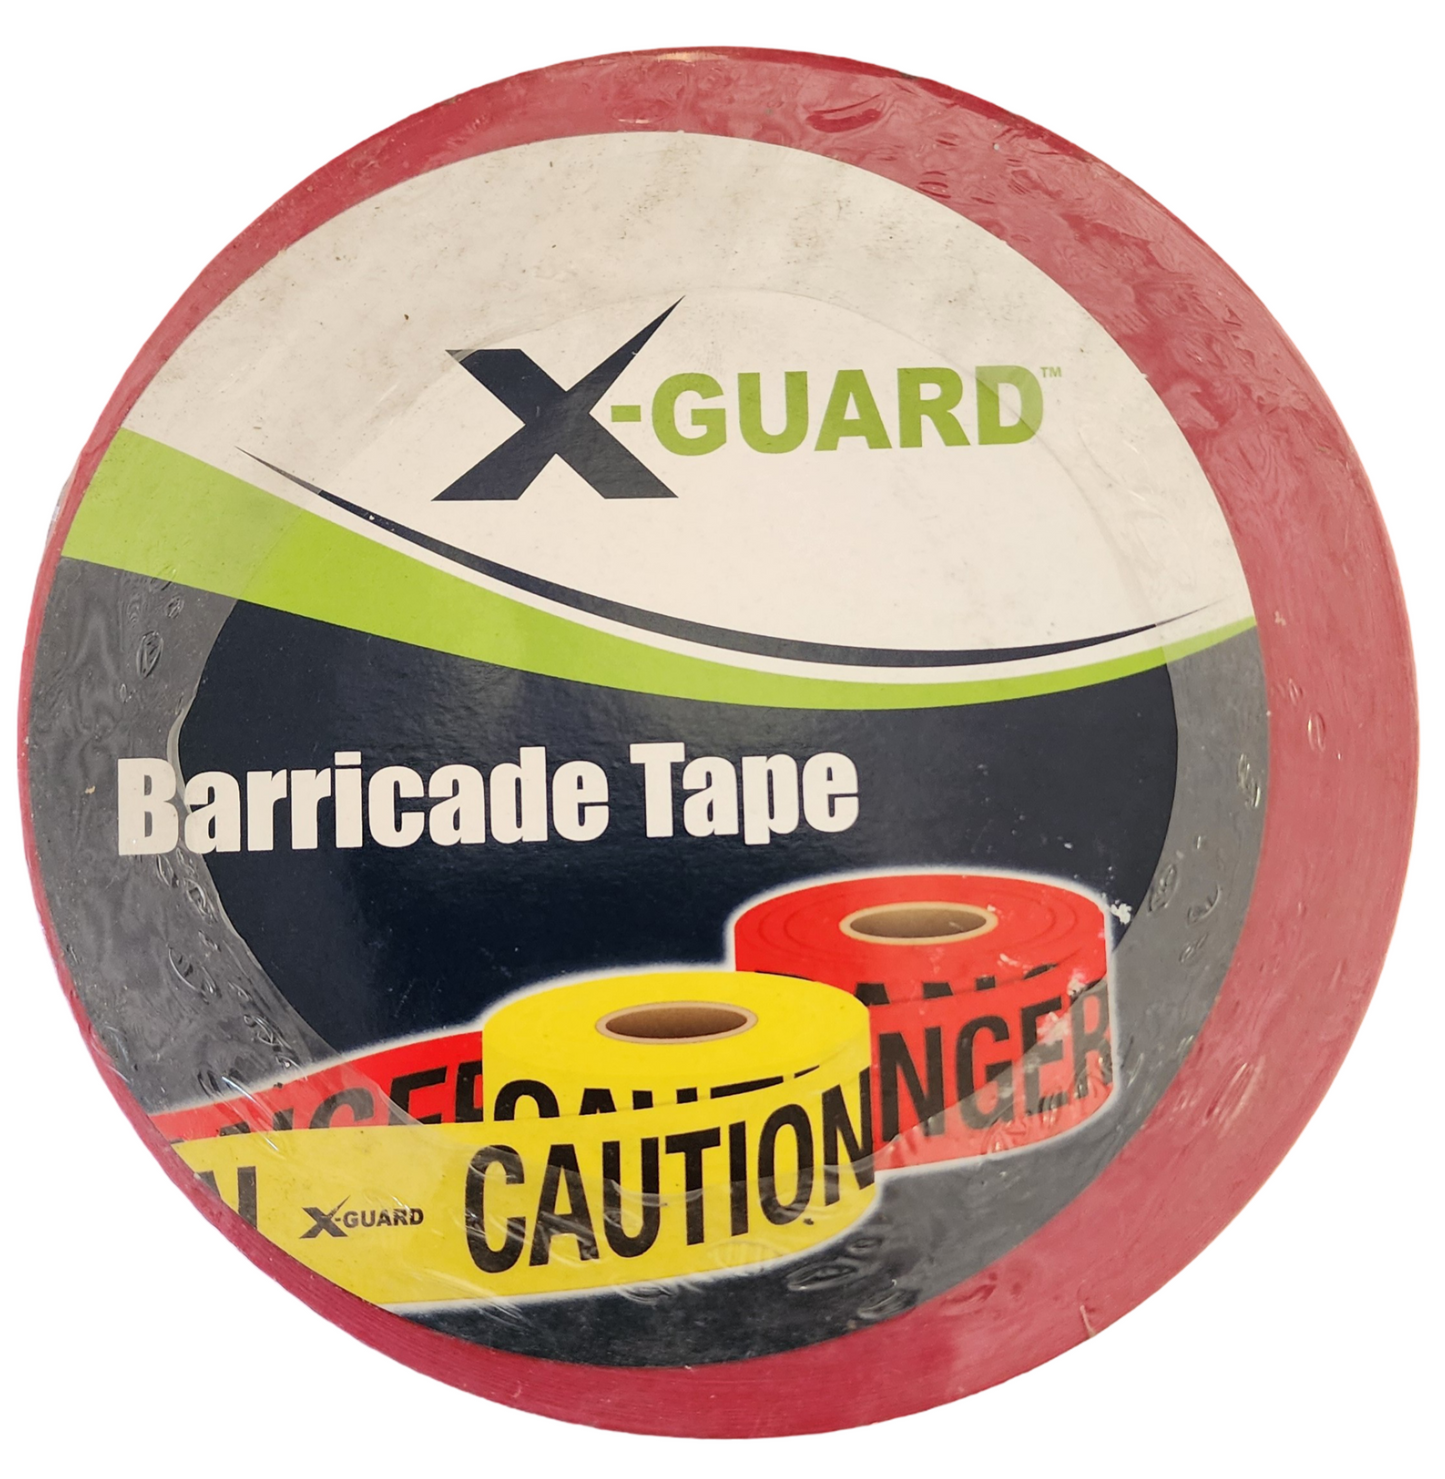 X-Guard Barricade Tape: Danger Asbestos - 3" x 1000', Pack of 10 Rolls